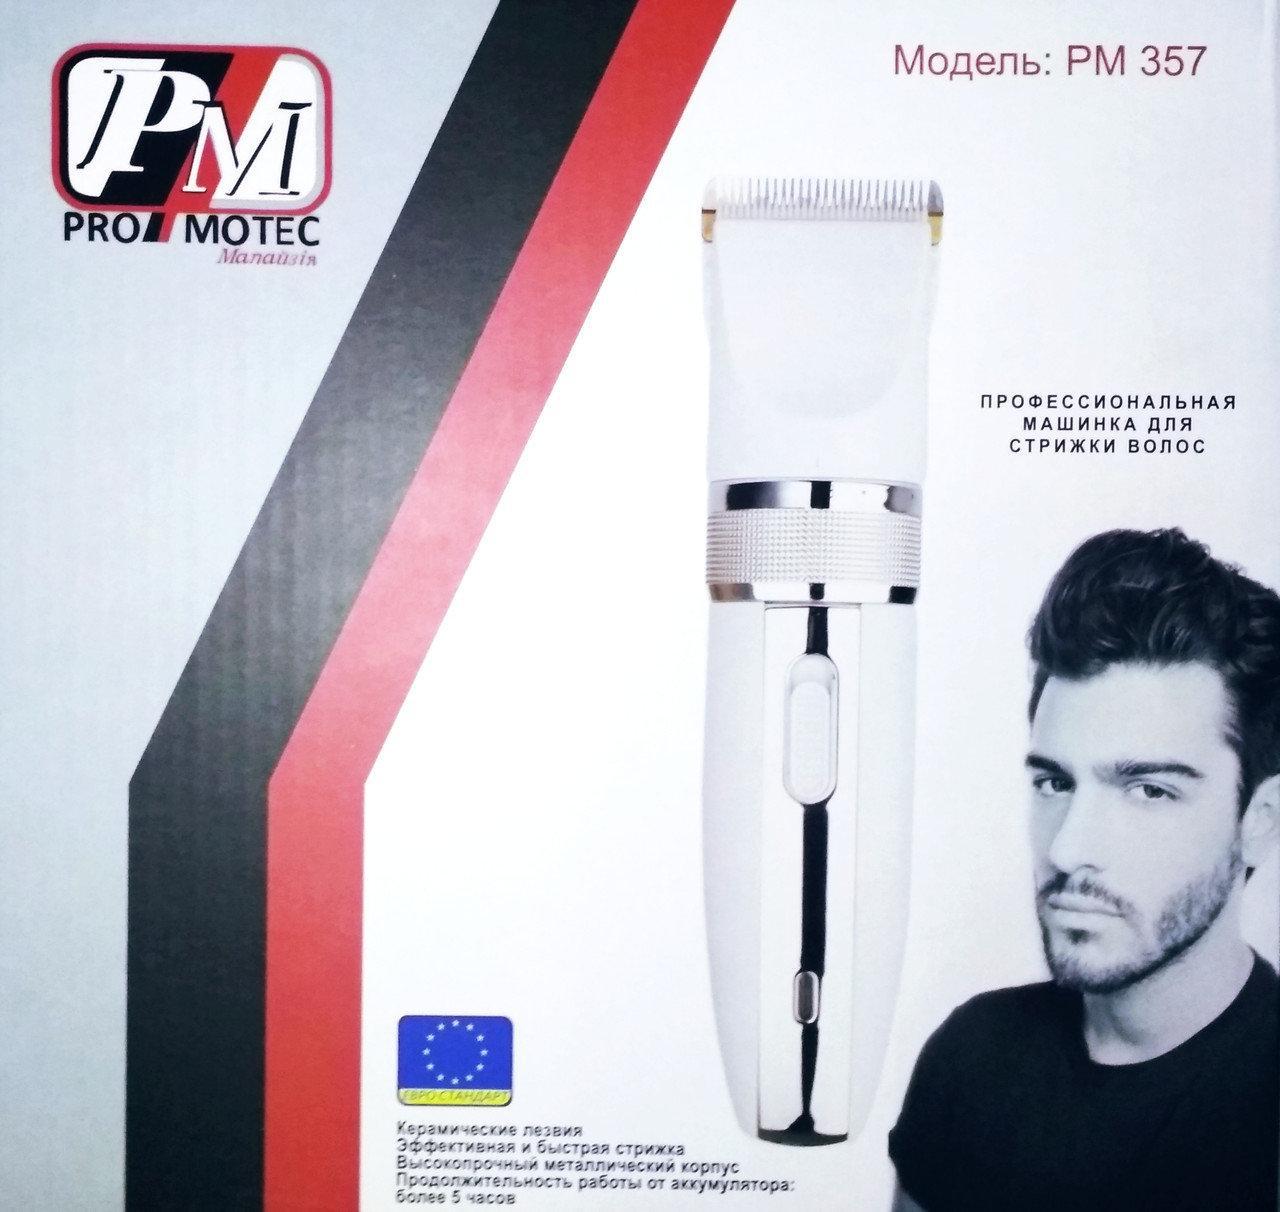 

Профессиональная машинка - триммер для стрижки волос PROMOTEC PM-357 с насадками